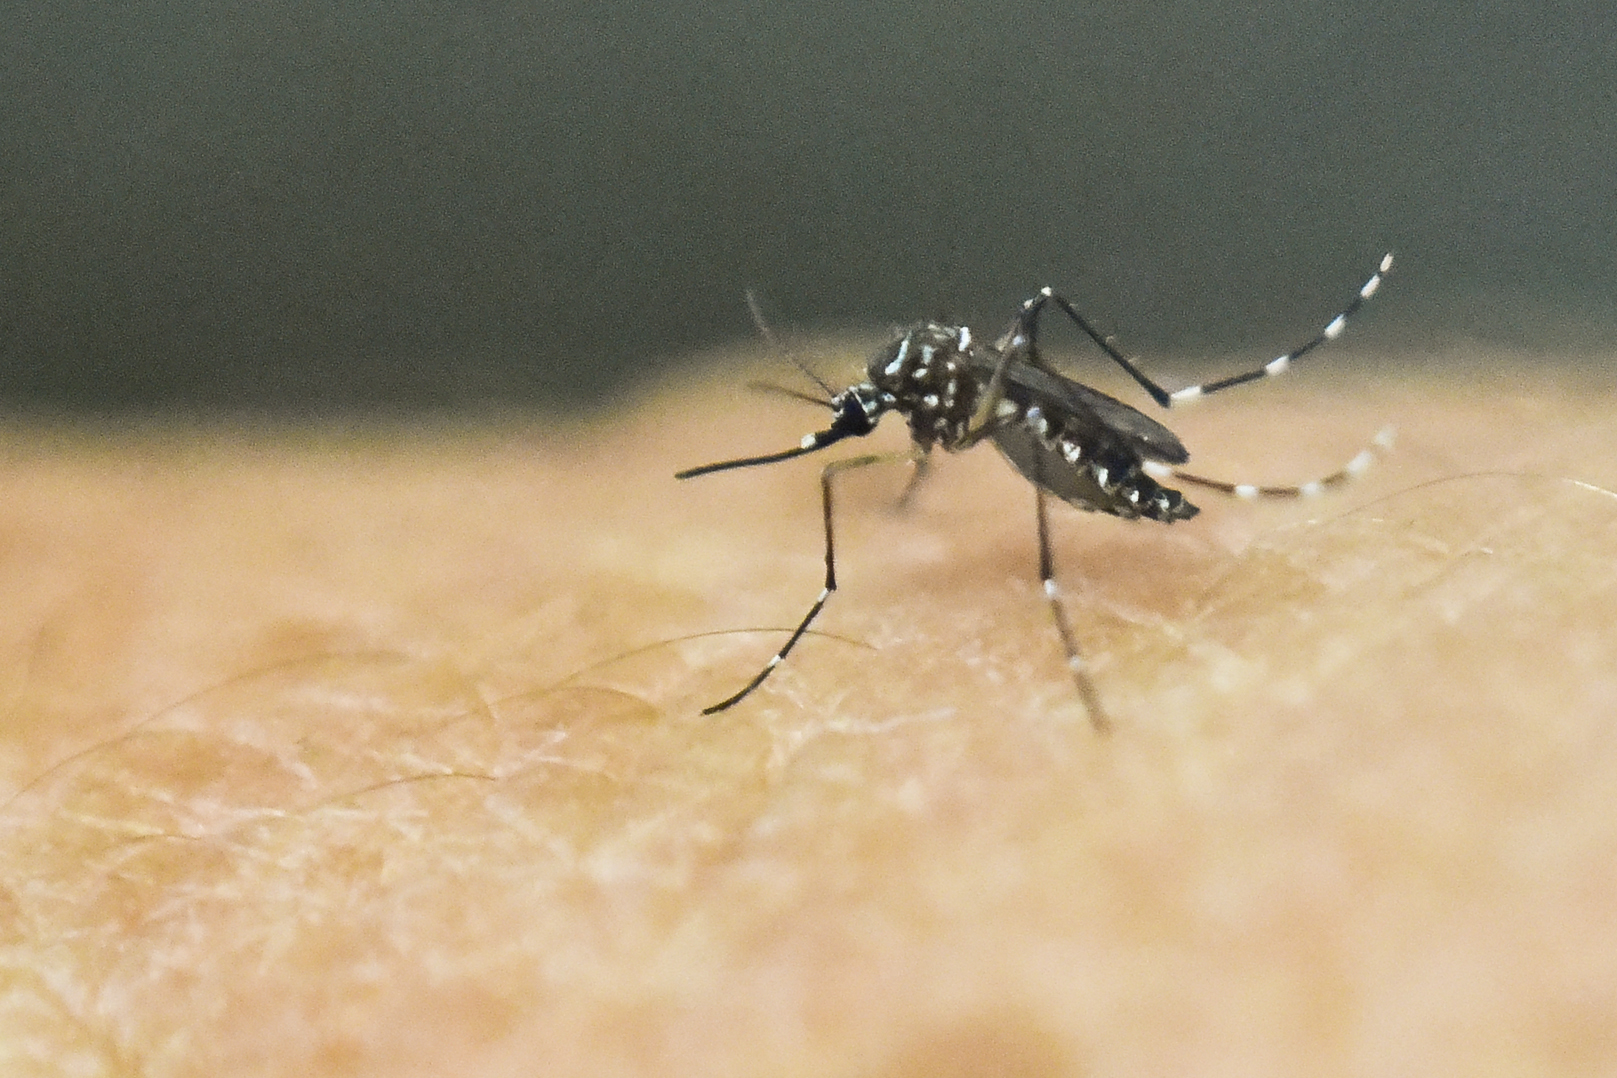 El mosquito Aedes Aegypti que transmite el zika, chikungunya y dengue. (Foto Prensa Libre: Hemeroteca PL) 